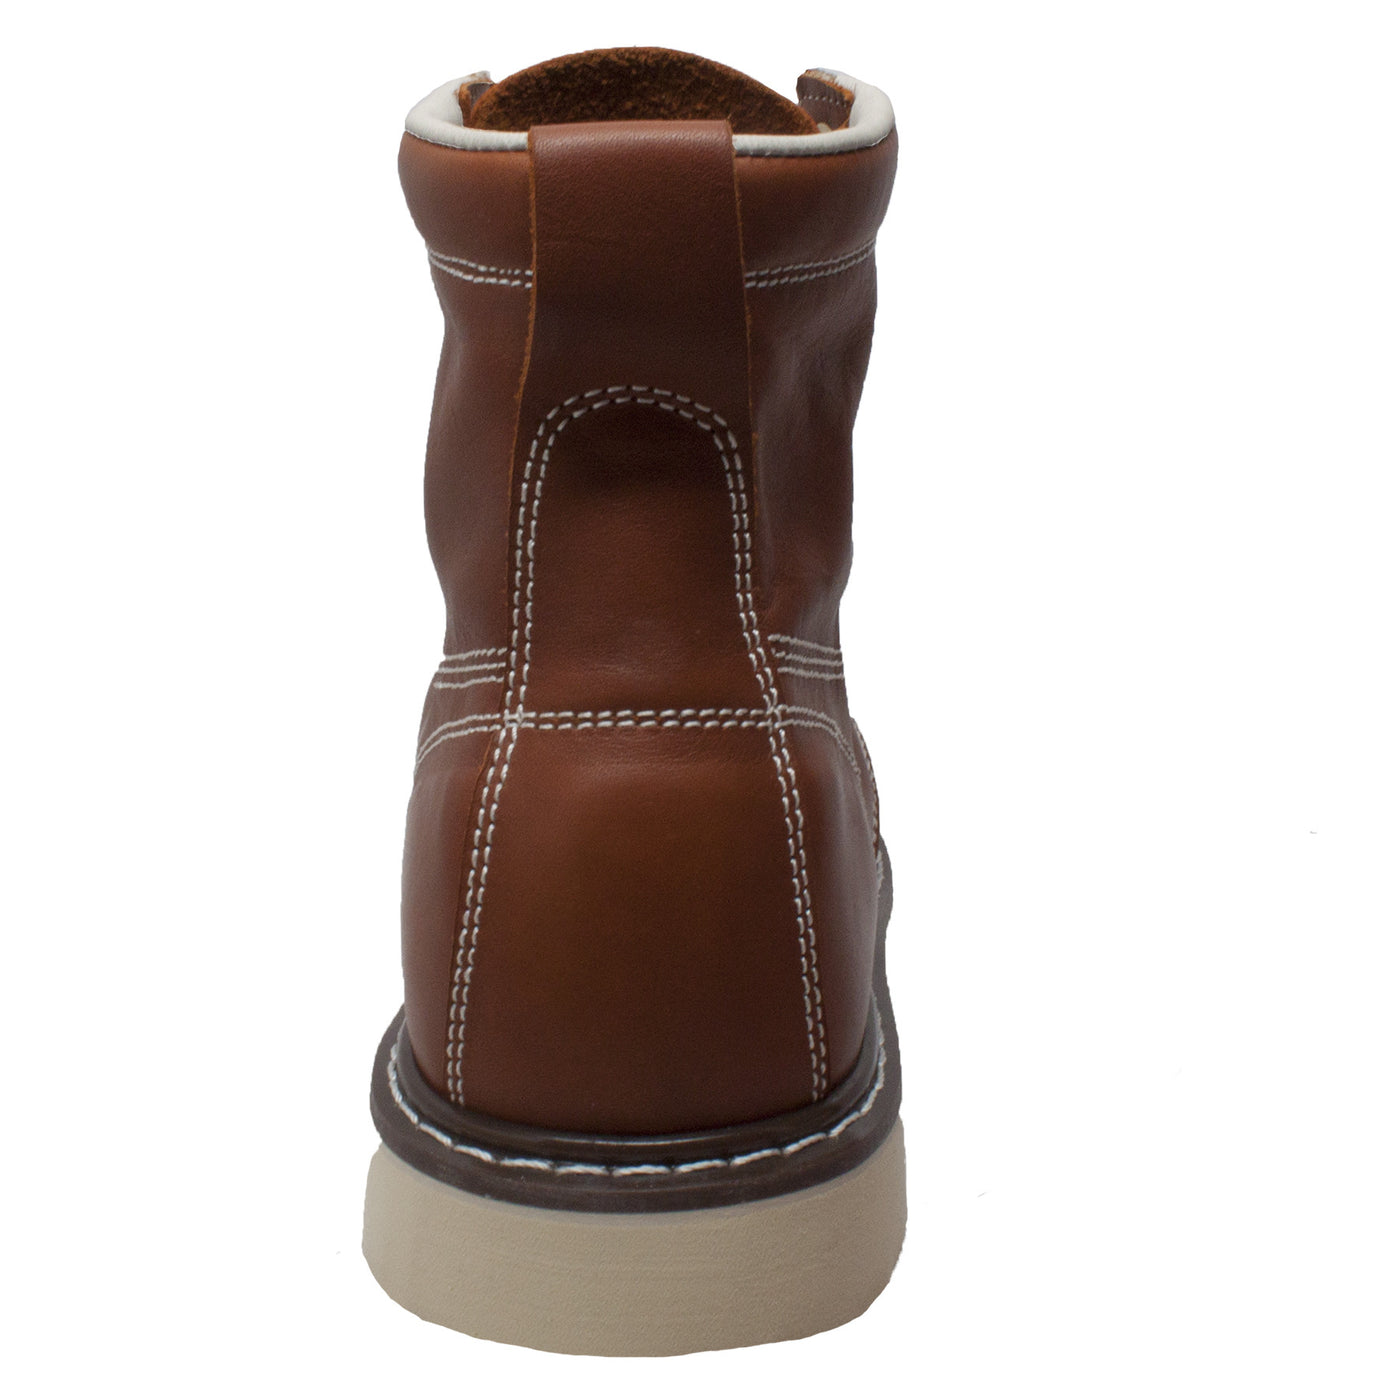 Men's 6" Farm Boot - 9238 - Shop Genuine Leather men & women's boots online | AdTecFootWear